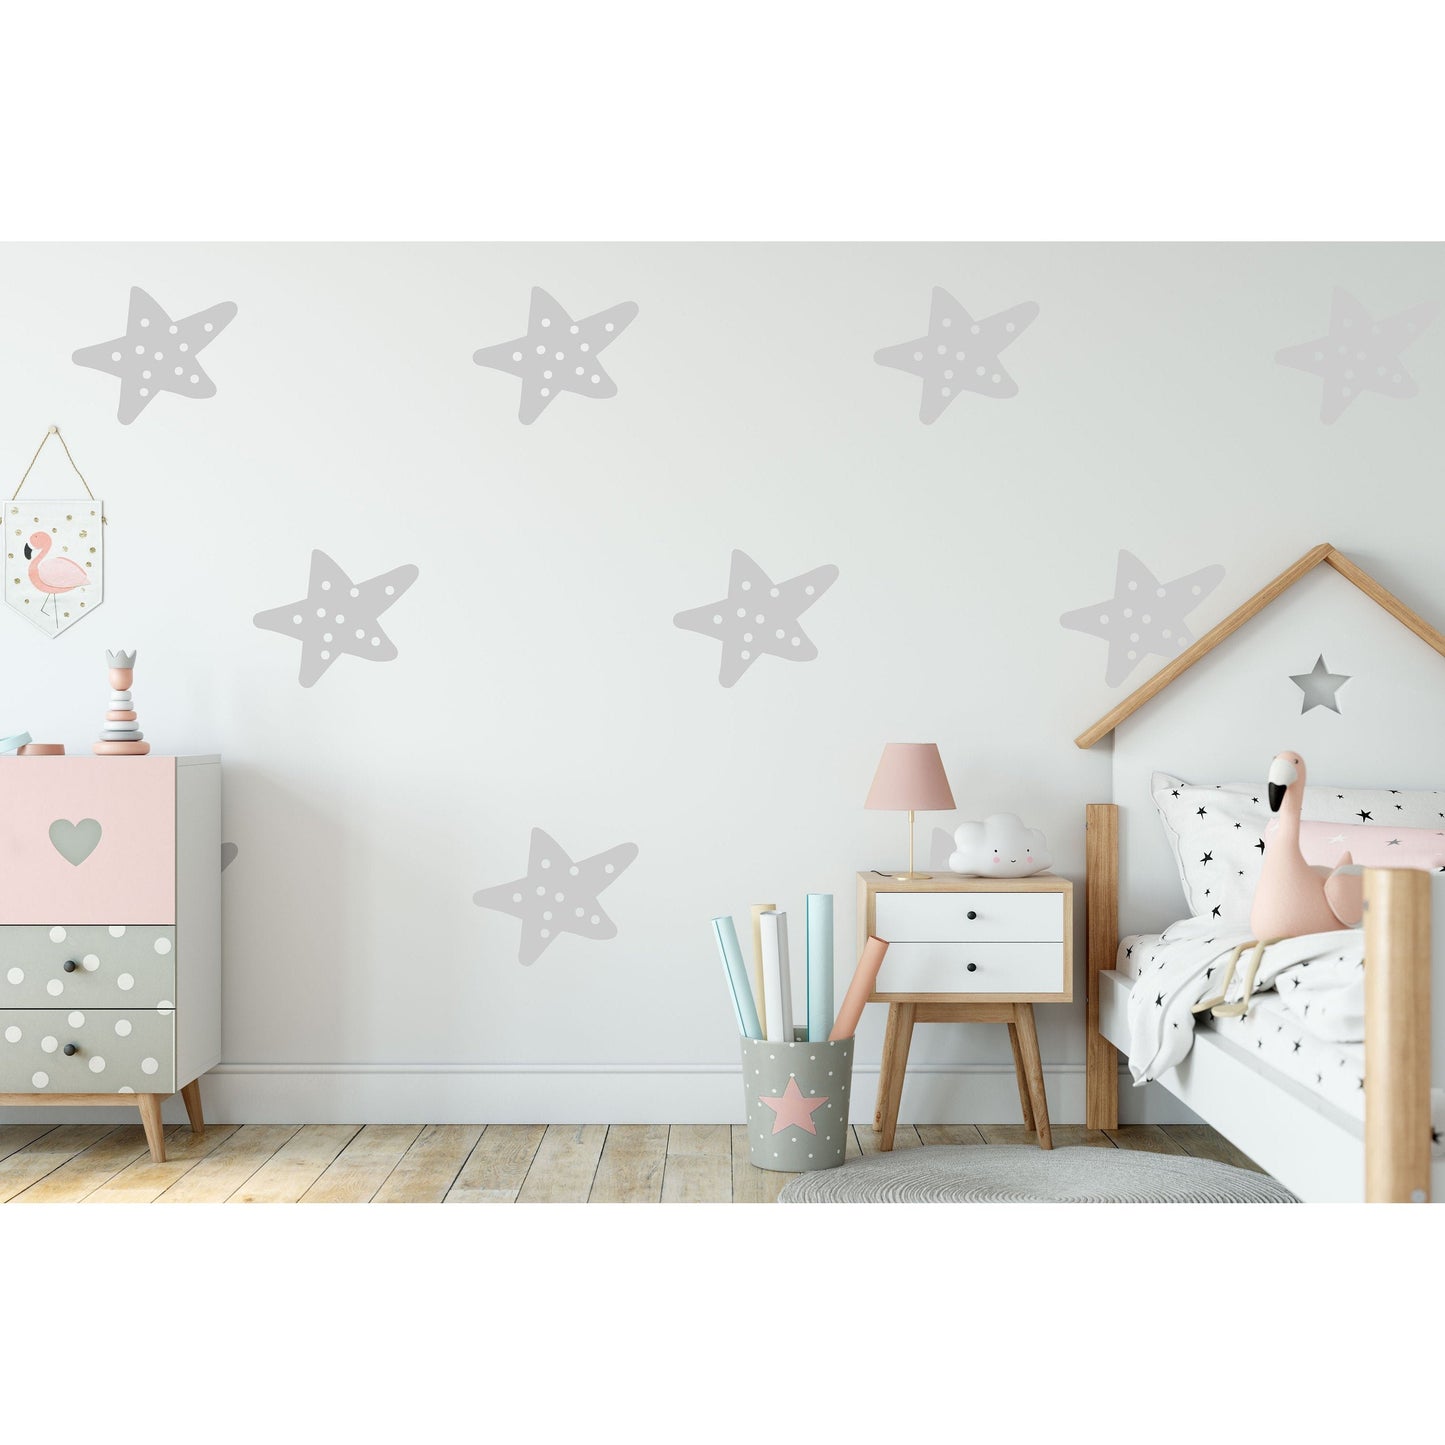 12 Decorative Spot Star Wall Stickers